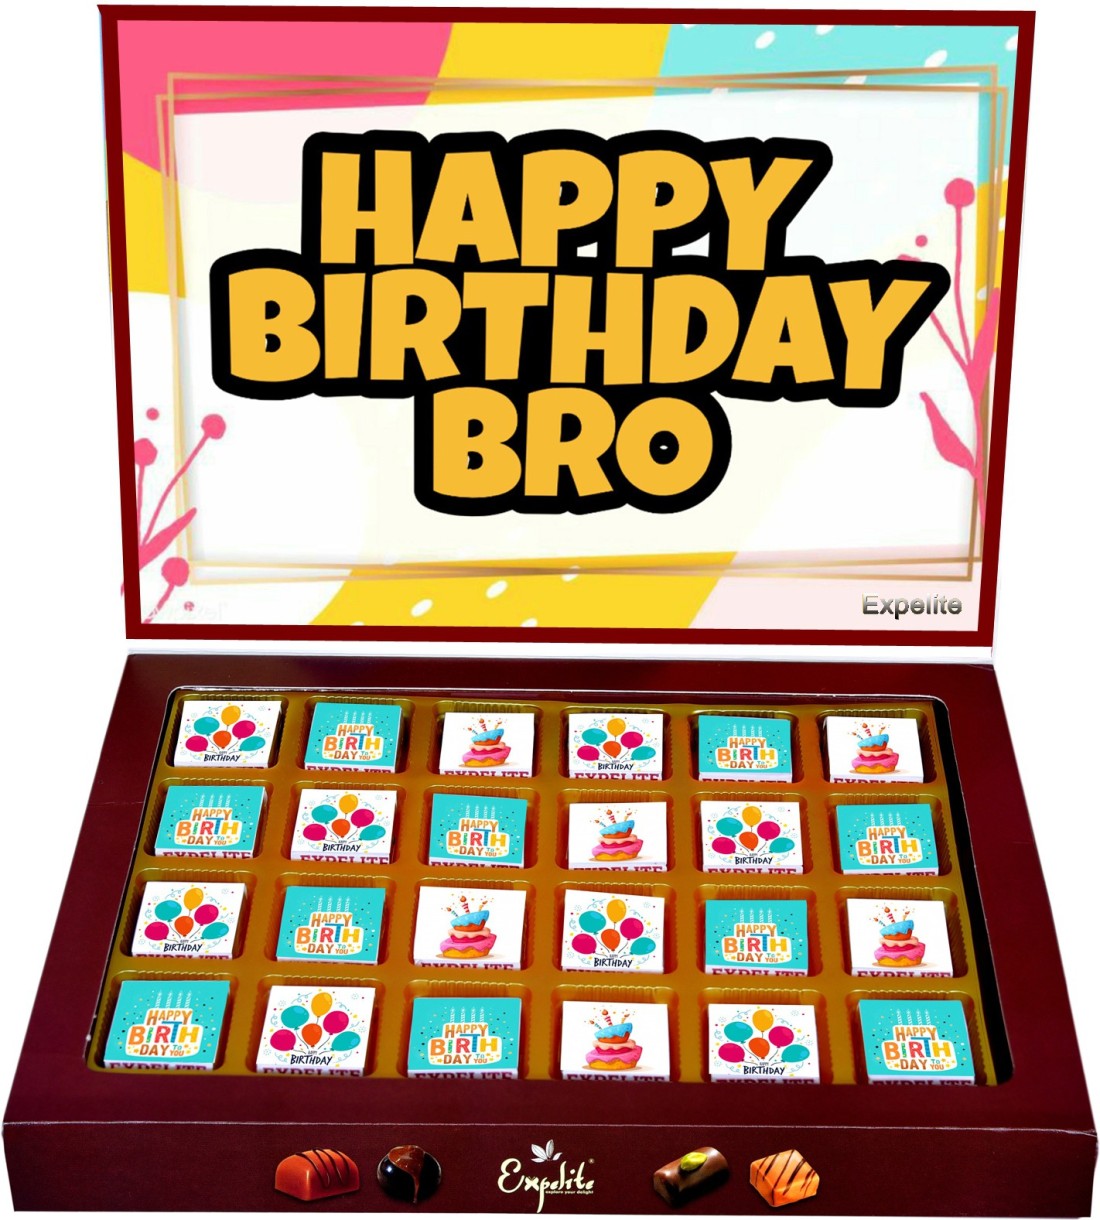 Expelite Happy Birthday Bro Chocolate gift box - 24 pc Birthday ...